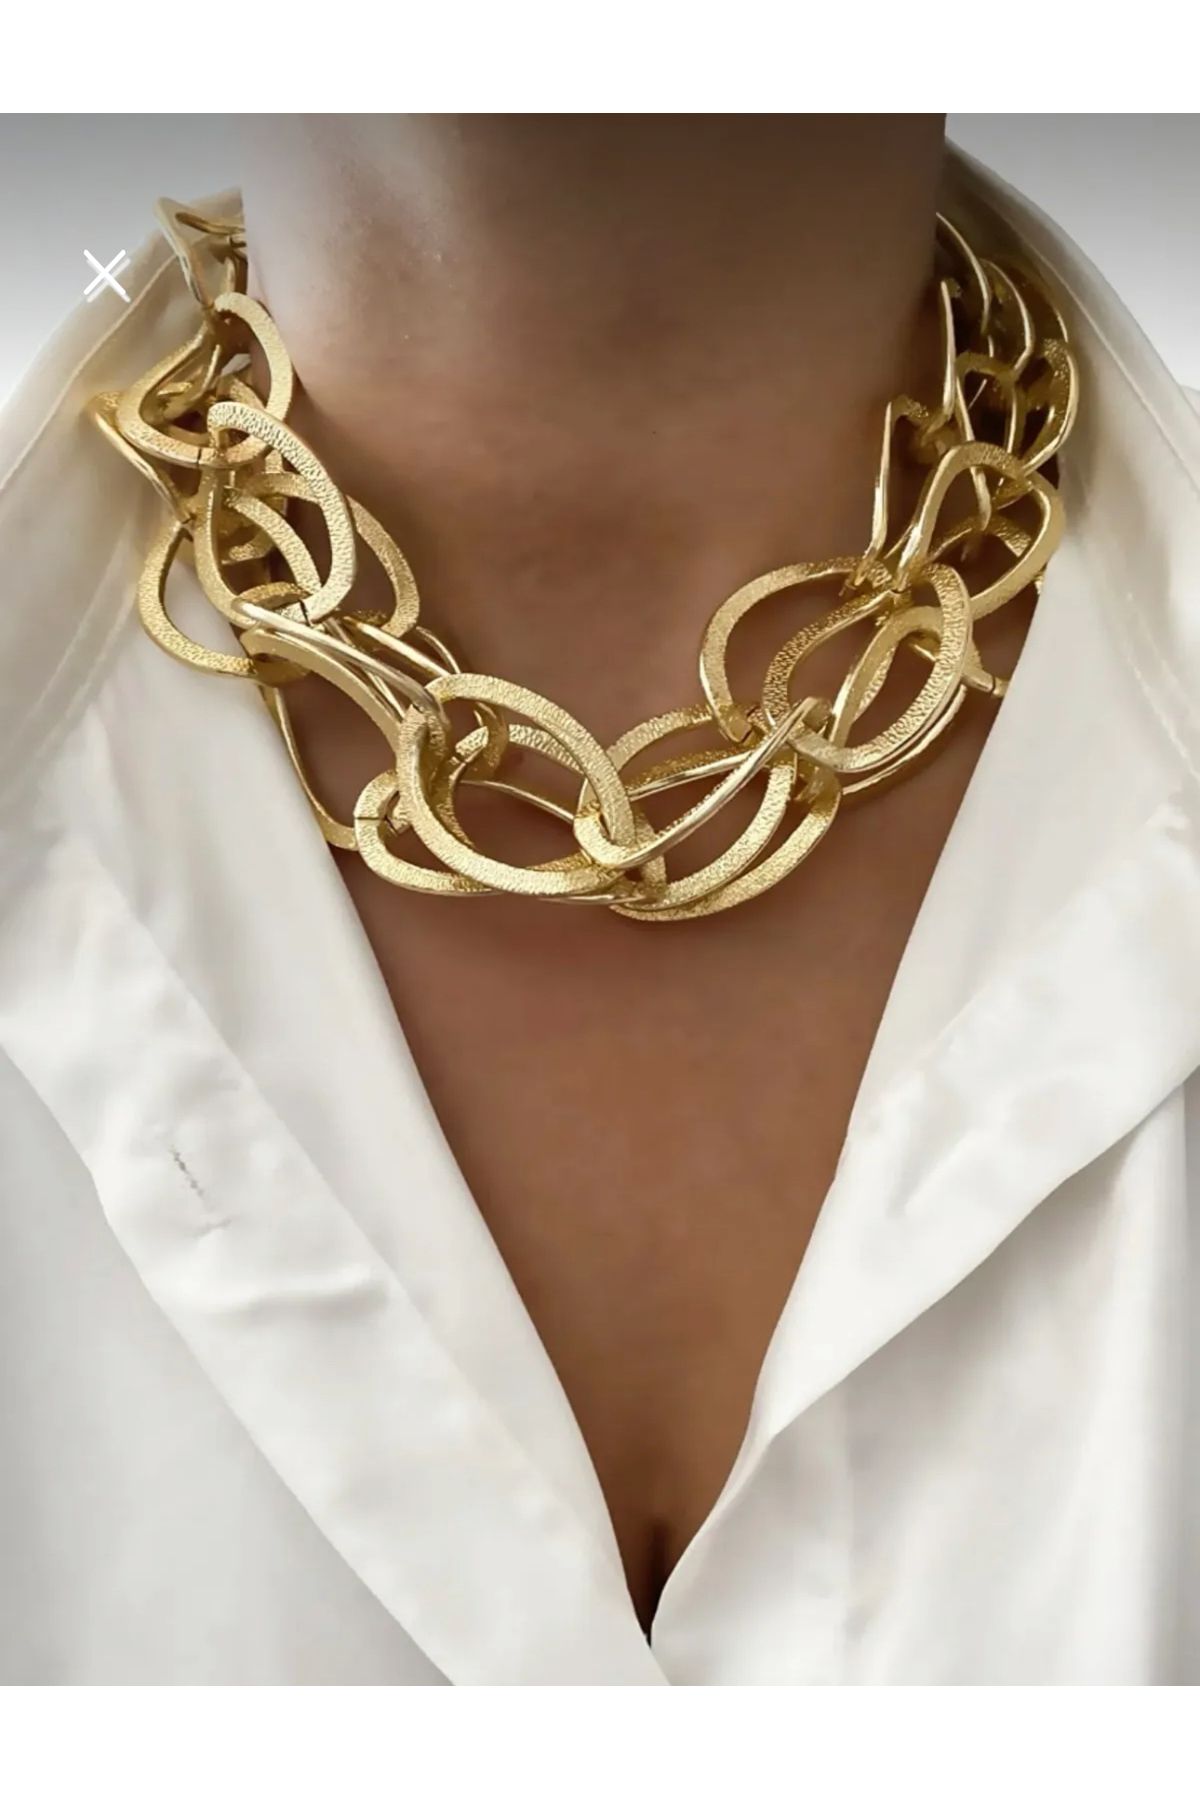 Maiden design Gold renk çoklu zincir kolye bileklik küpe seti